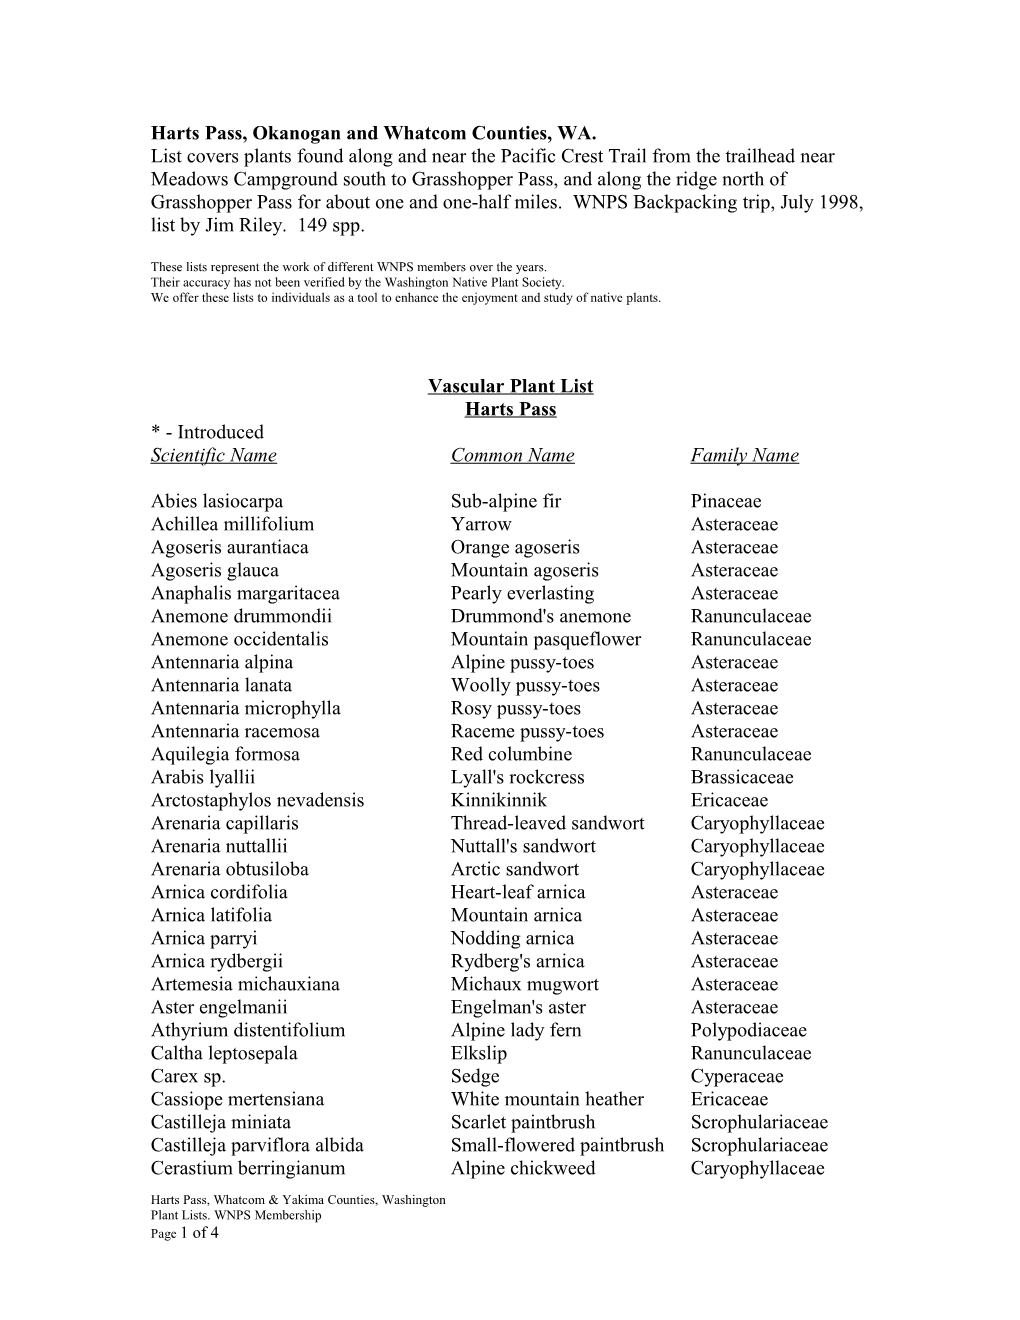 Vascular Plant List s6